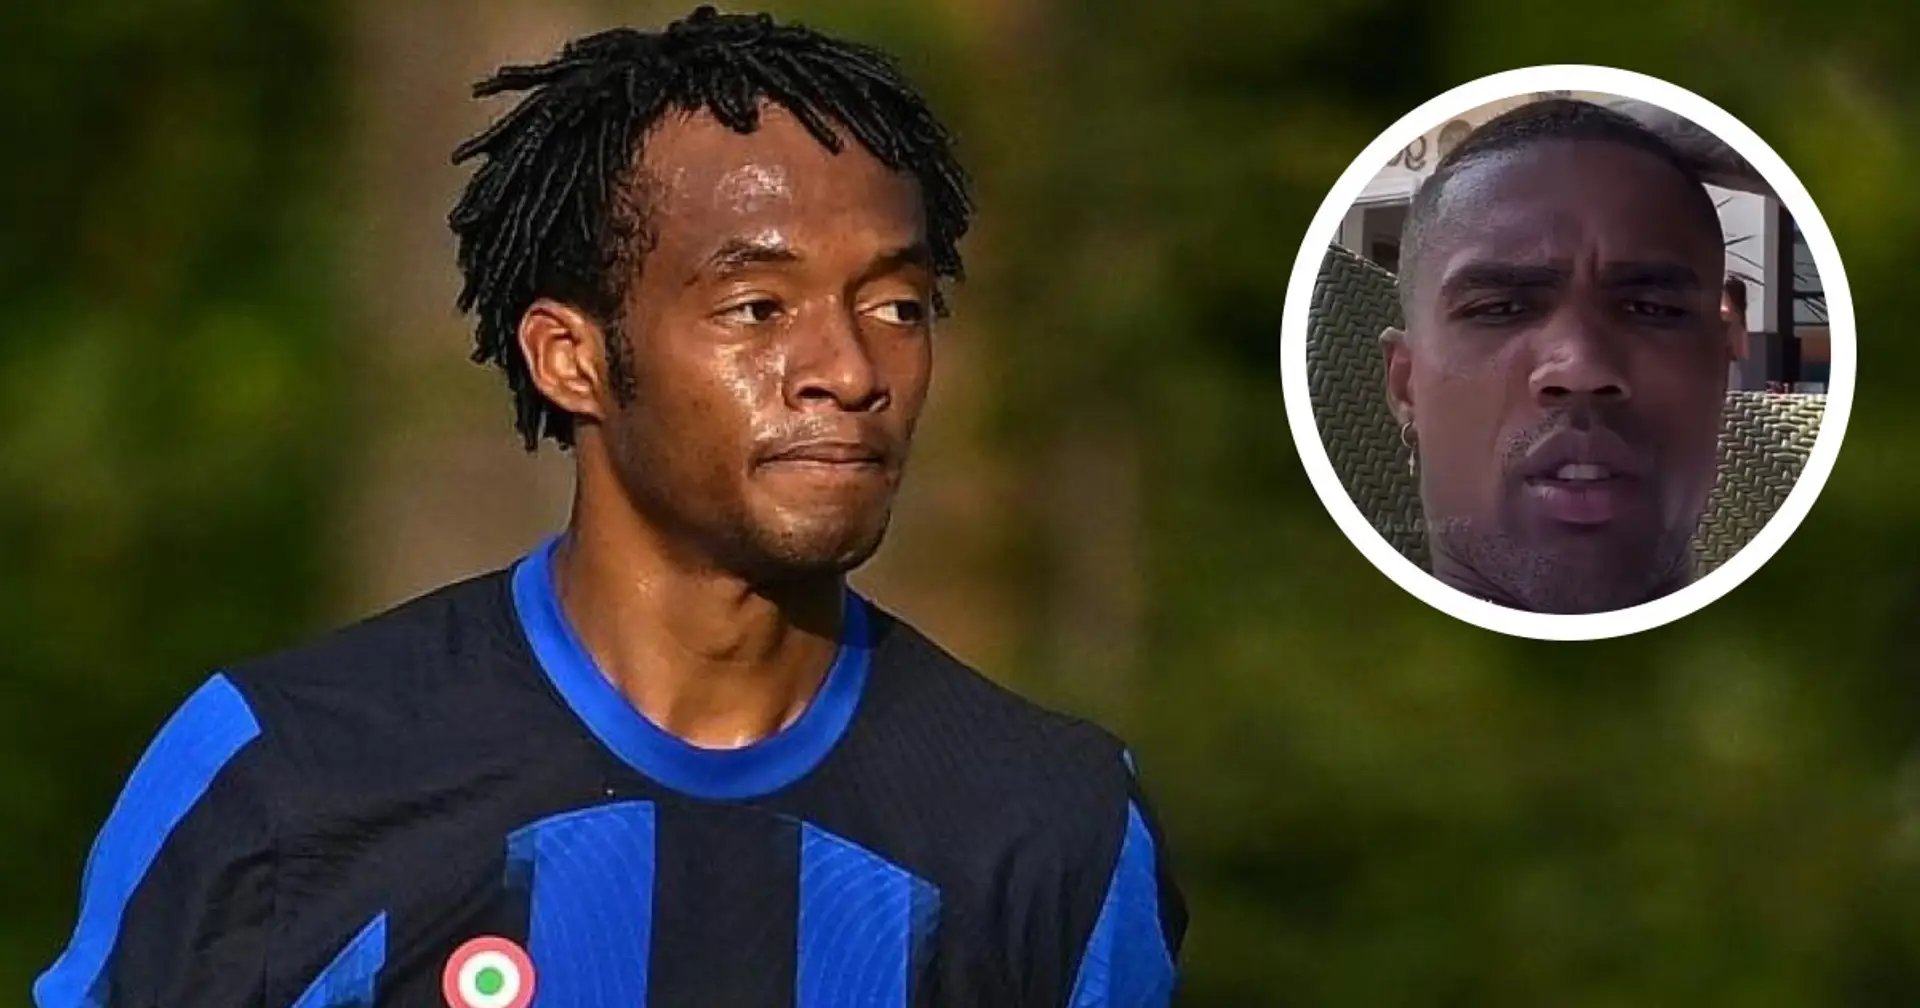 "Cuadrado all'Inter? Ho visto!": la reazione dell'ex Juve Douglas Costa al trasferimento è virale